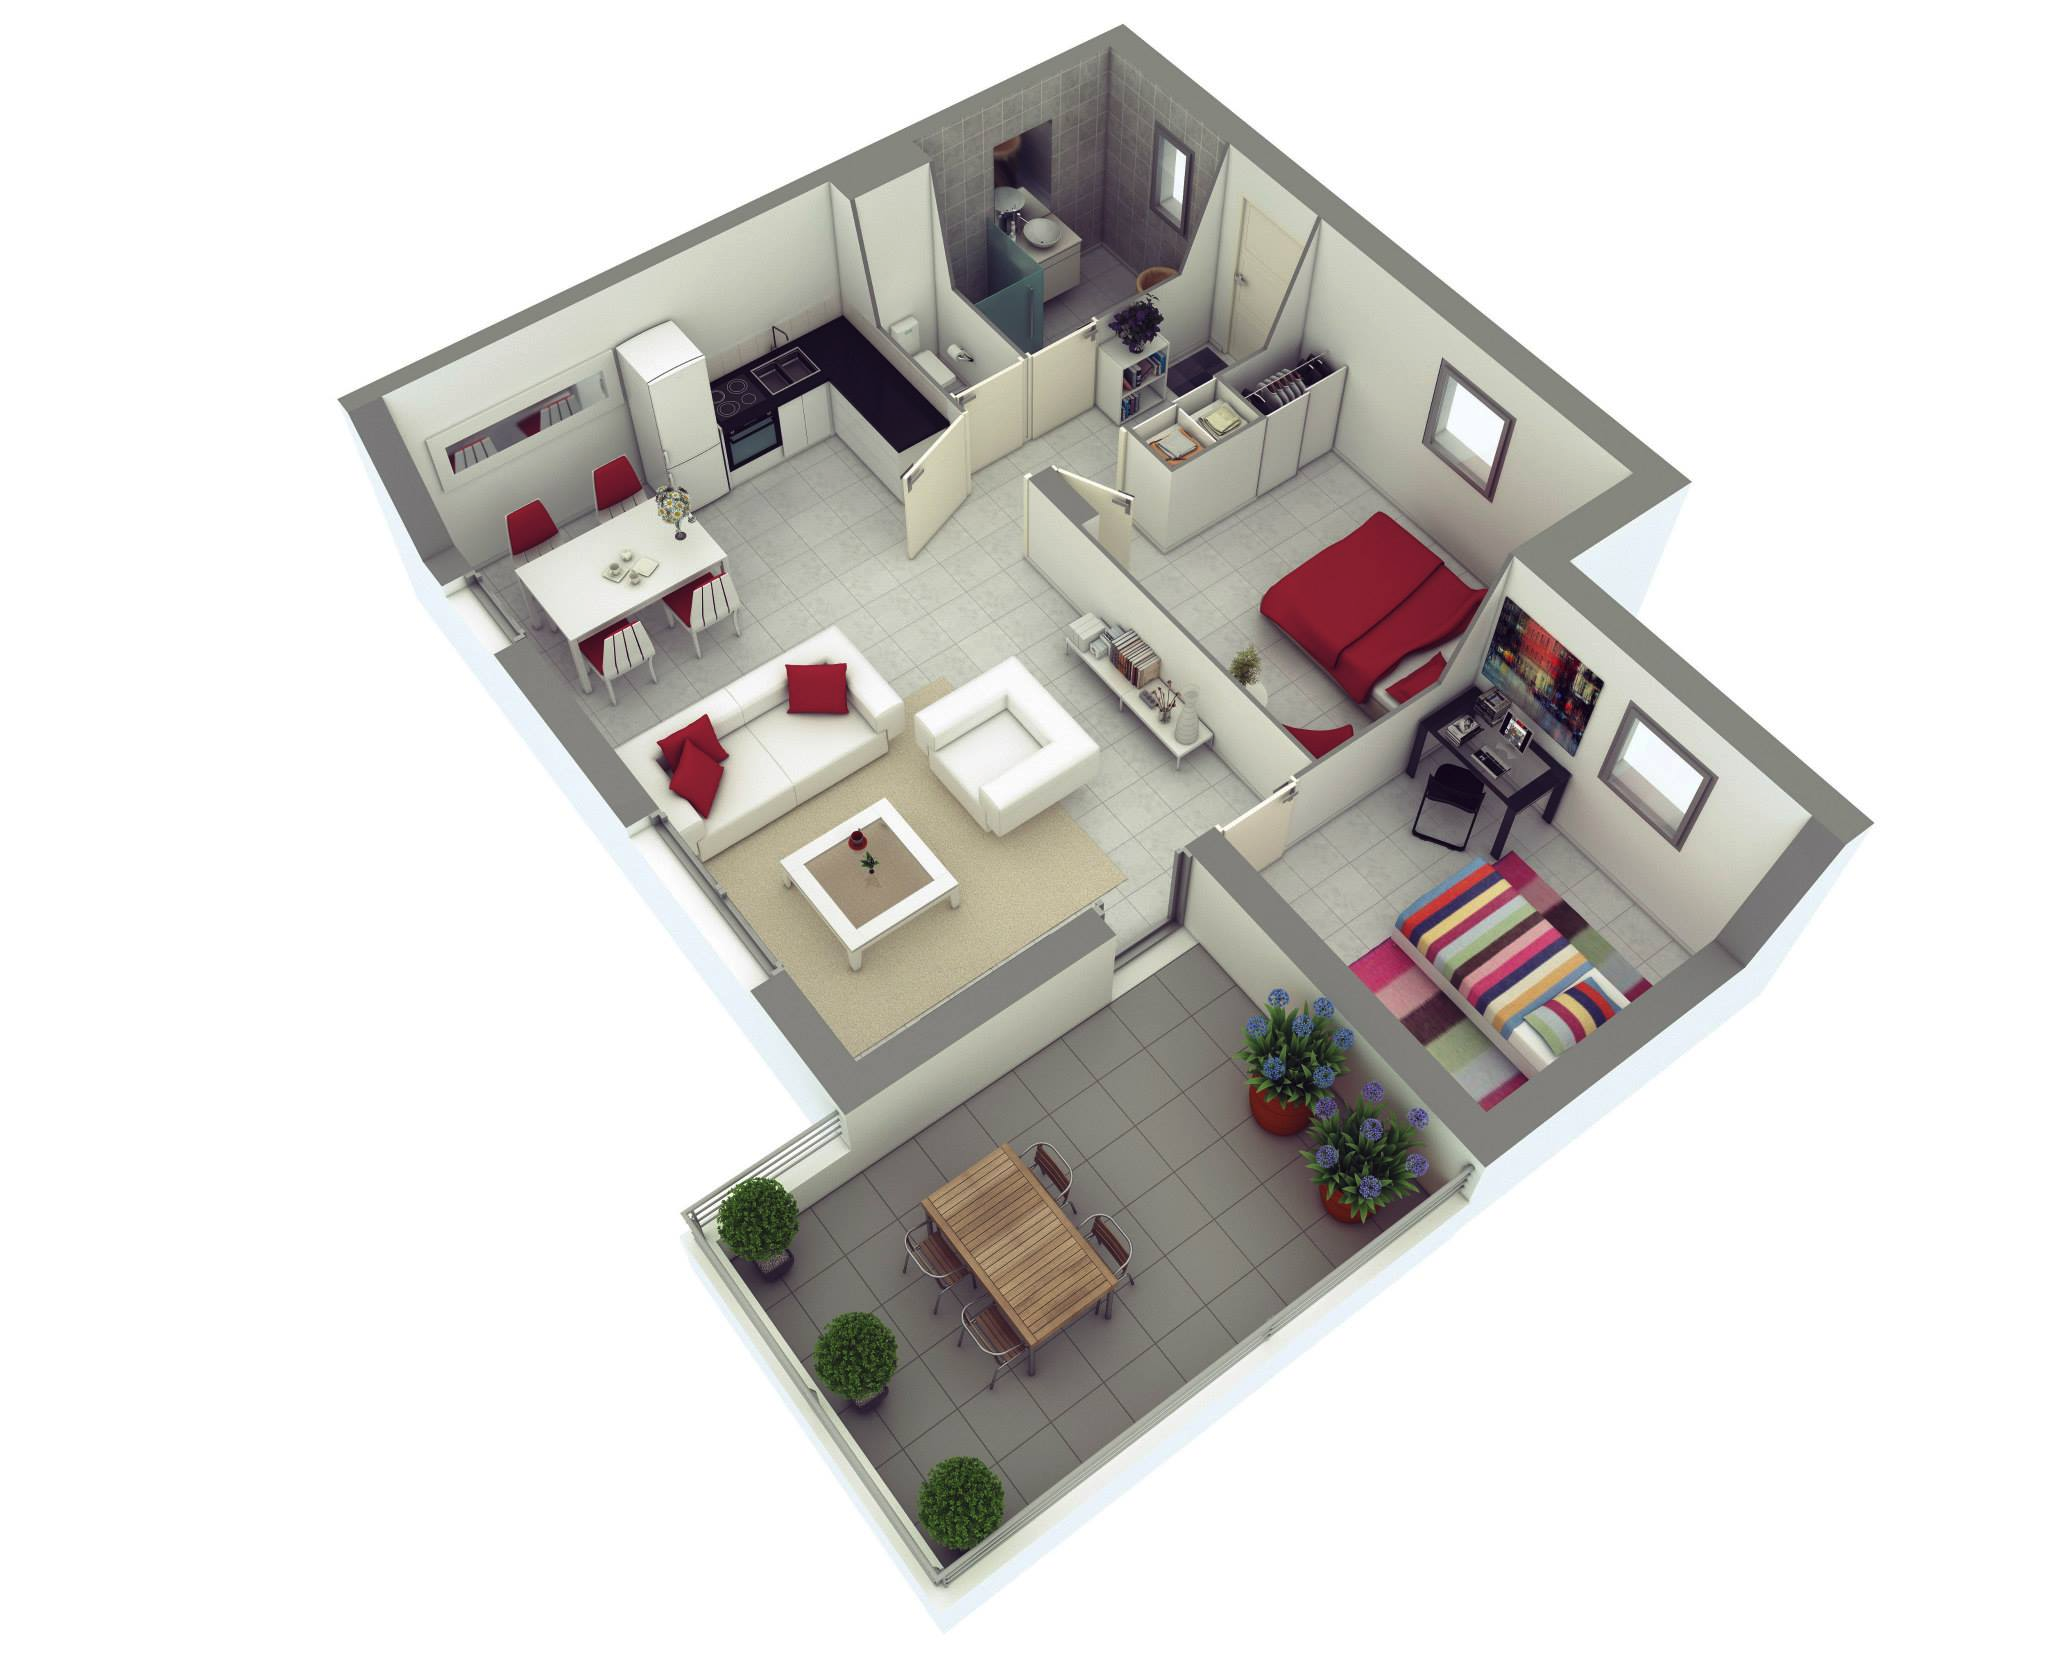 25 More 2 Bedroom 3d Floor Plans, Make Simple House Floor Plan